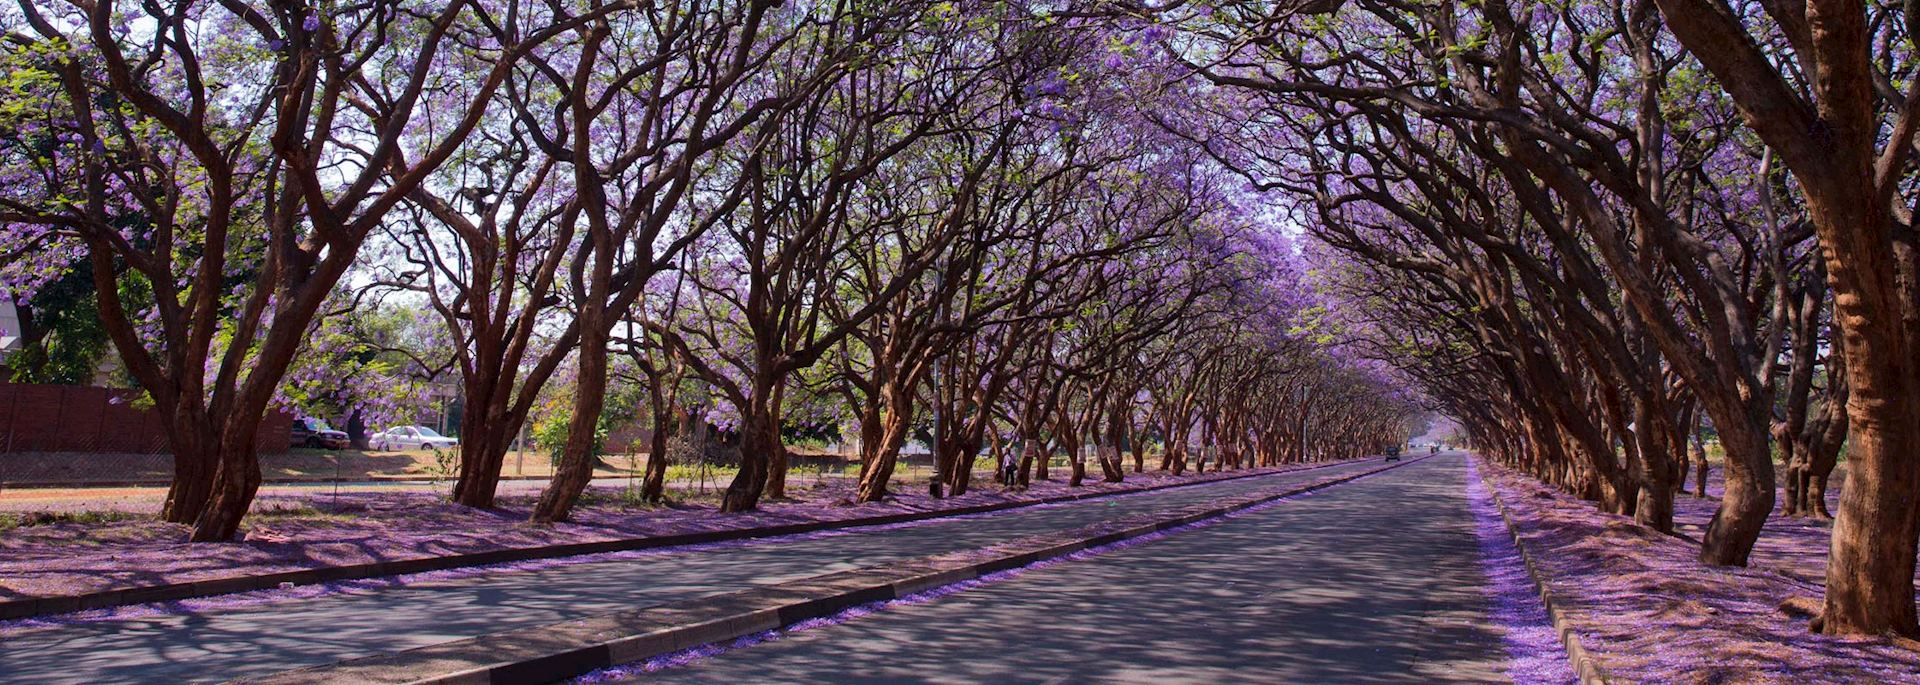 Jacaranda trees in Harare